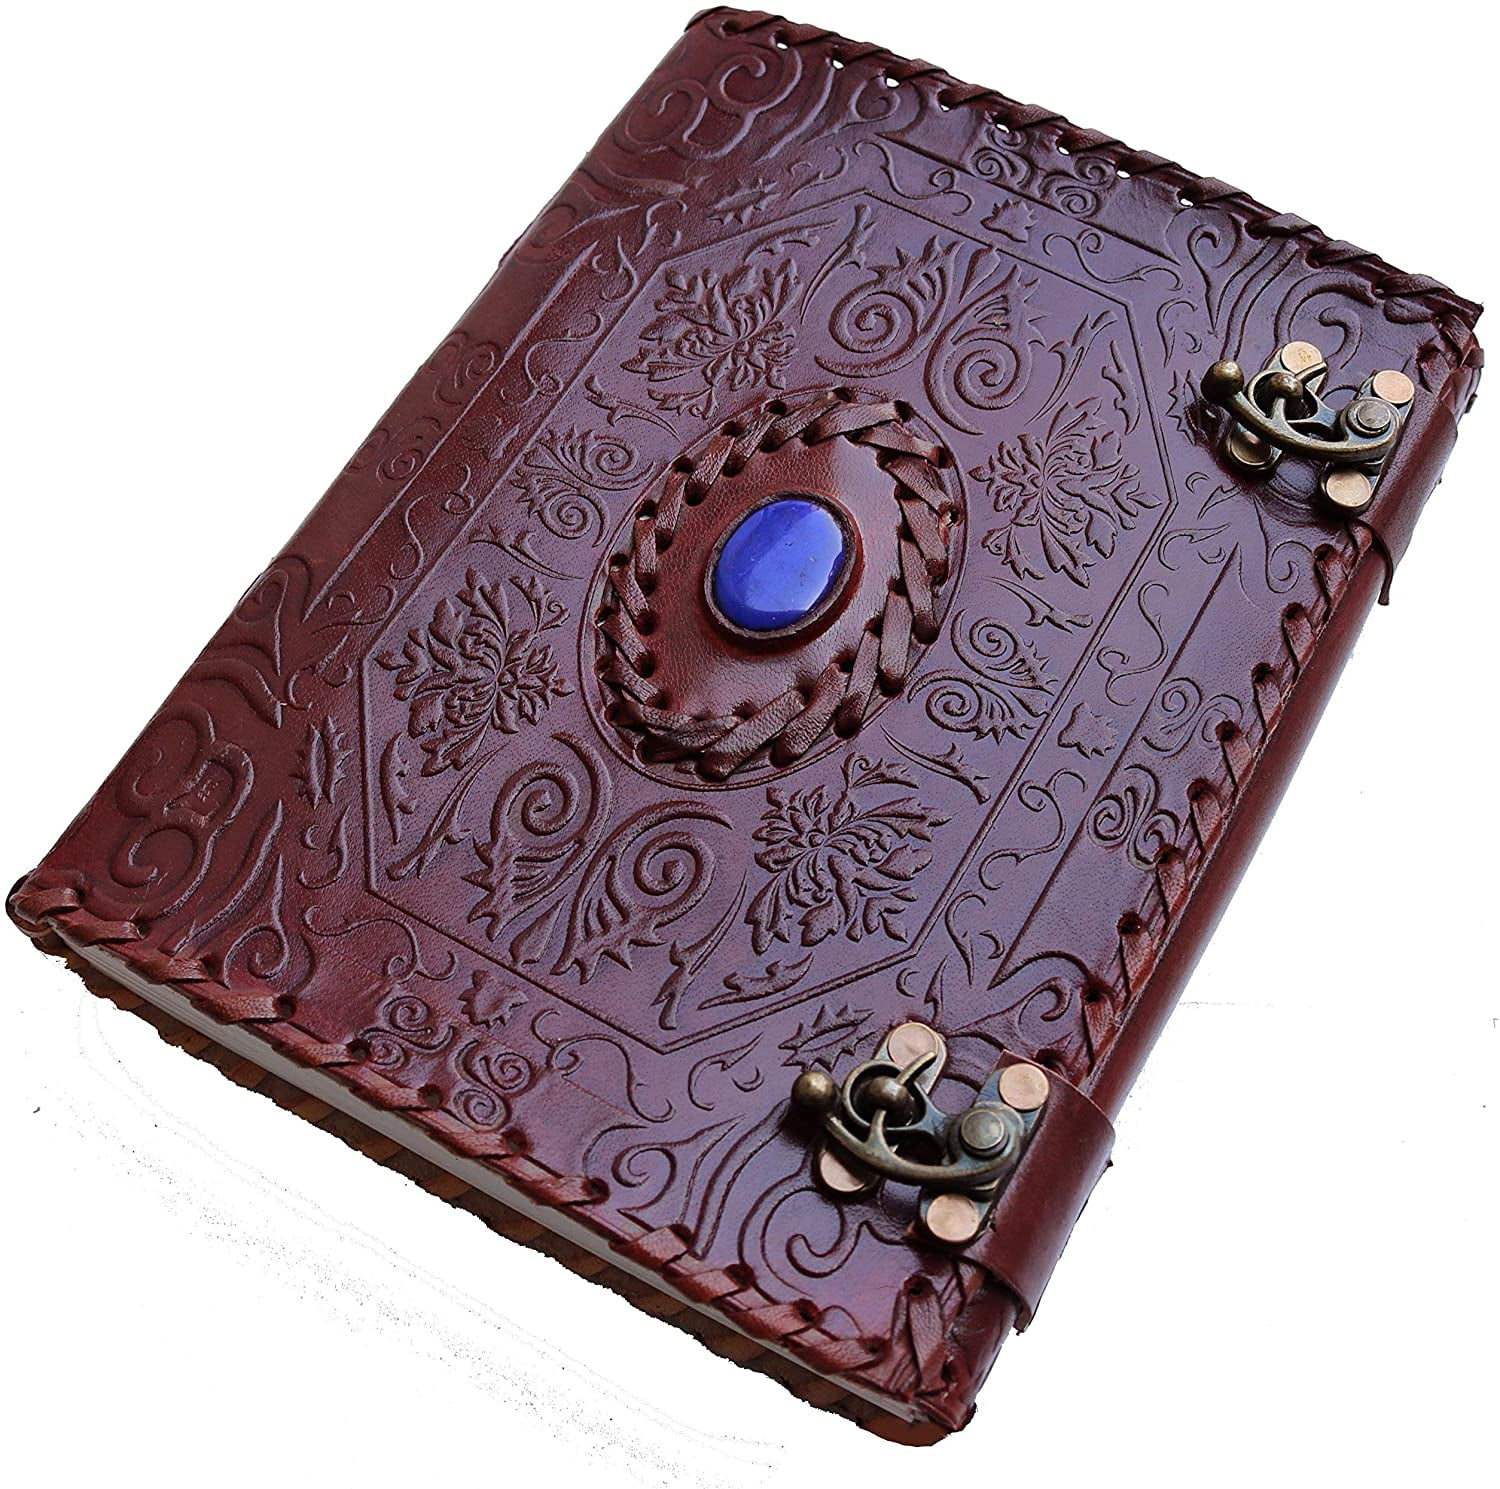 Handmade Genuine Leather Journal Notebook Notepad Sketchbook Diary Brown 